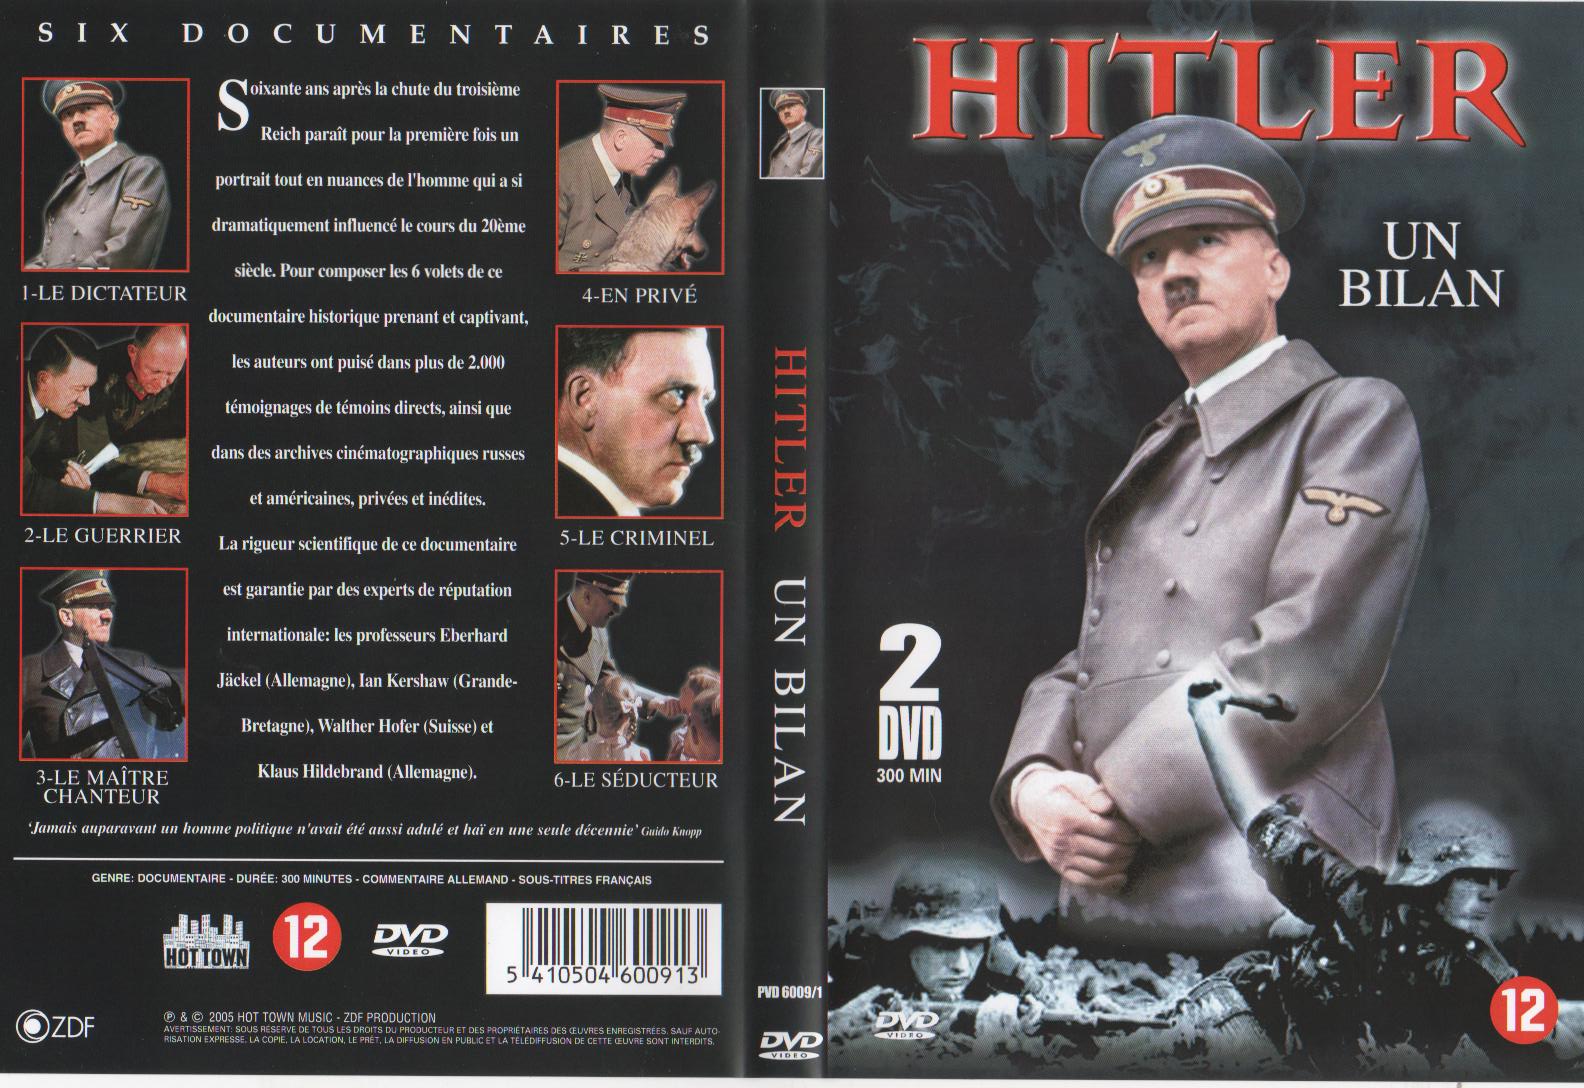 Jaquette DVD Hitler un bilan